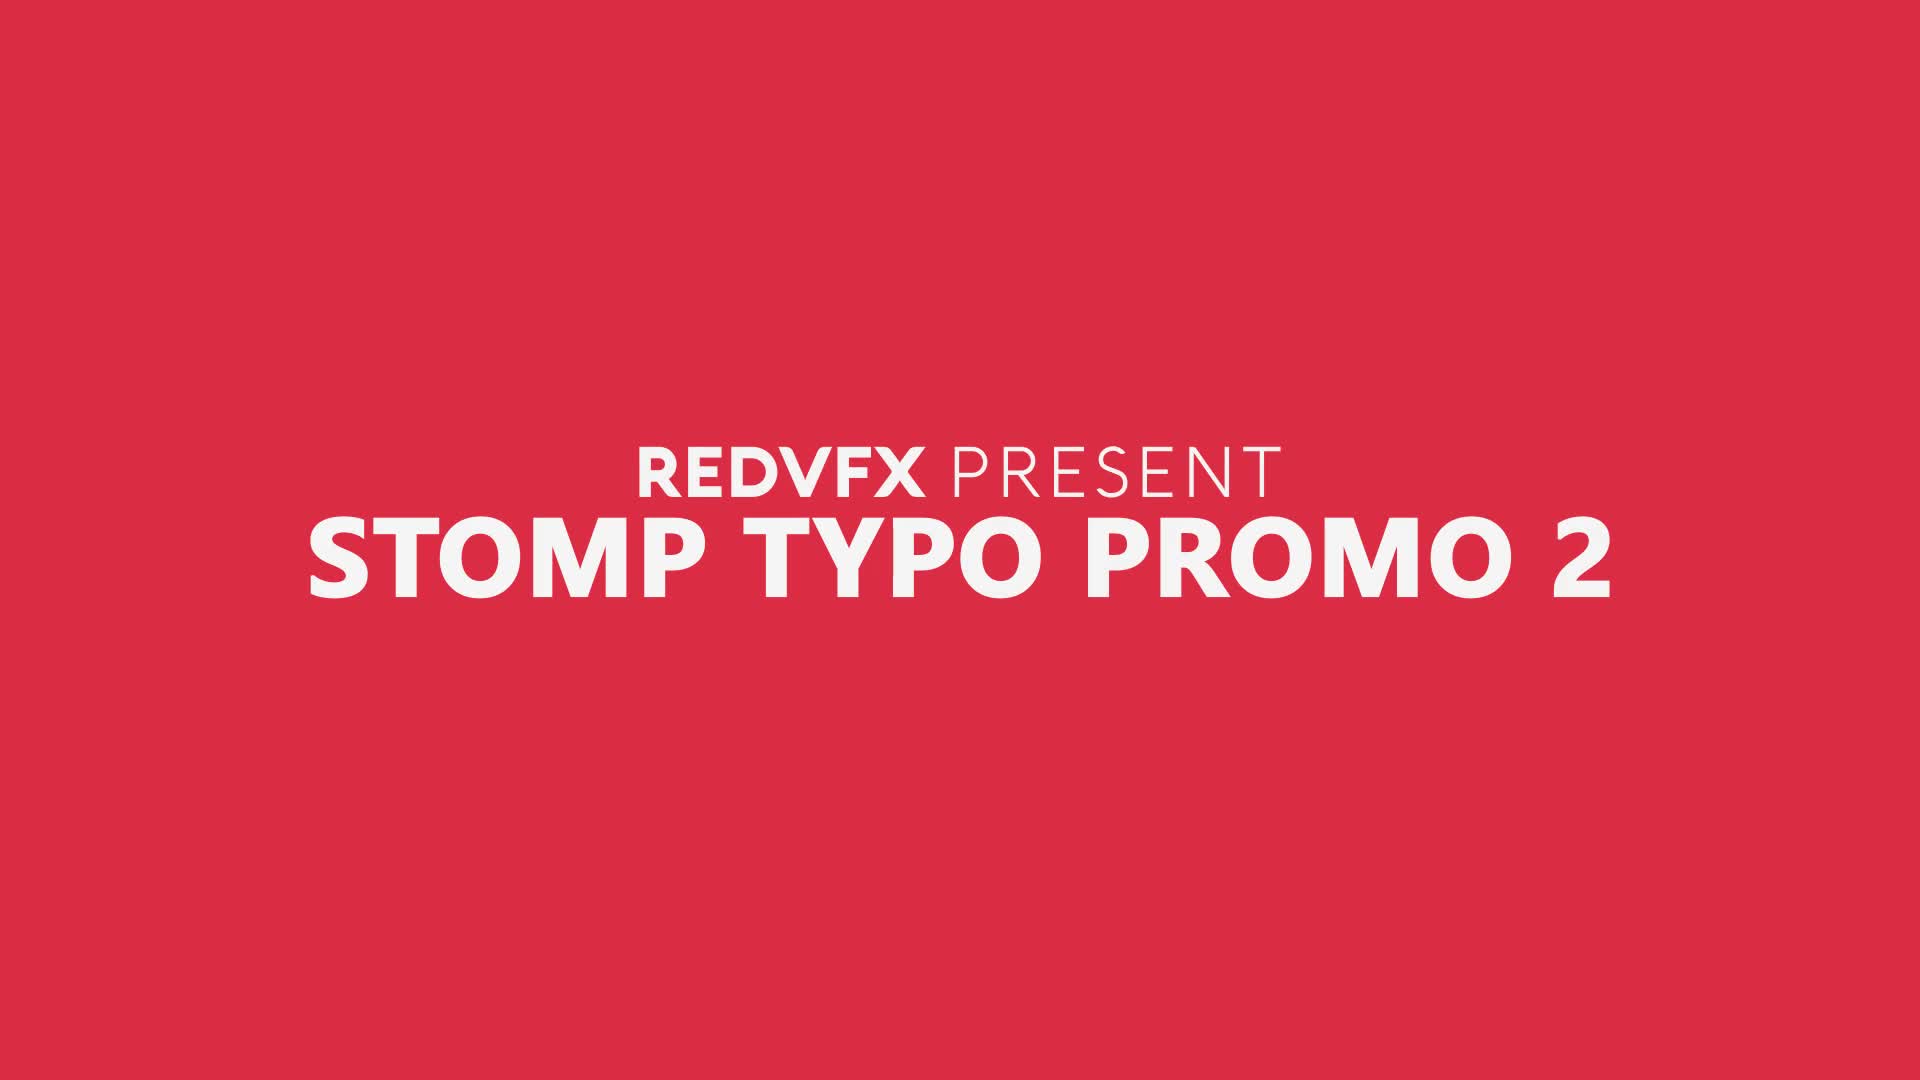 Stomp Typo Promo 2 for Premiere Pro Videohive 36928000 Premiere Pro Image 1